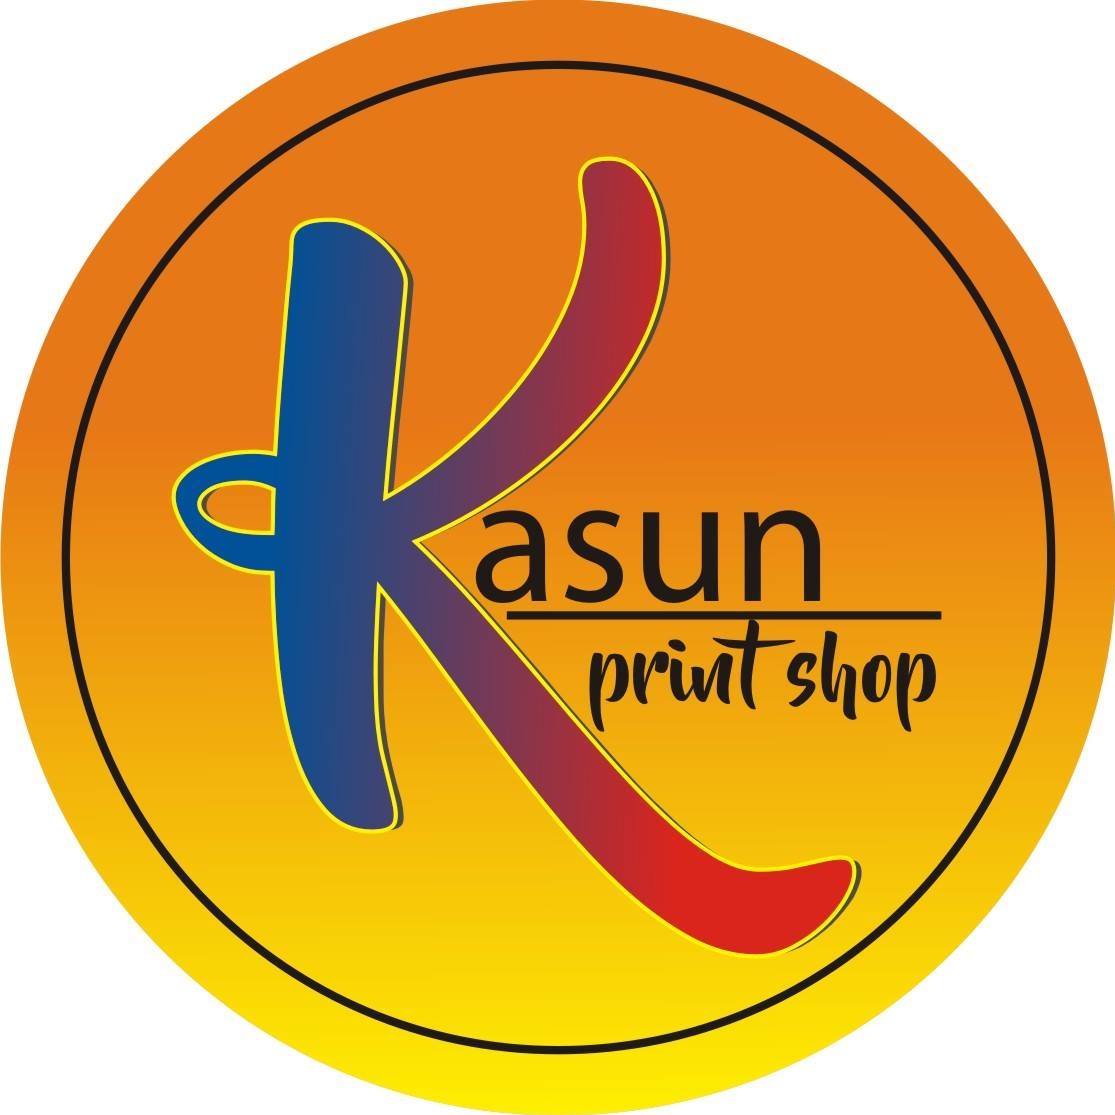 Kasun print shop logo